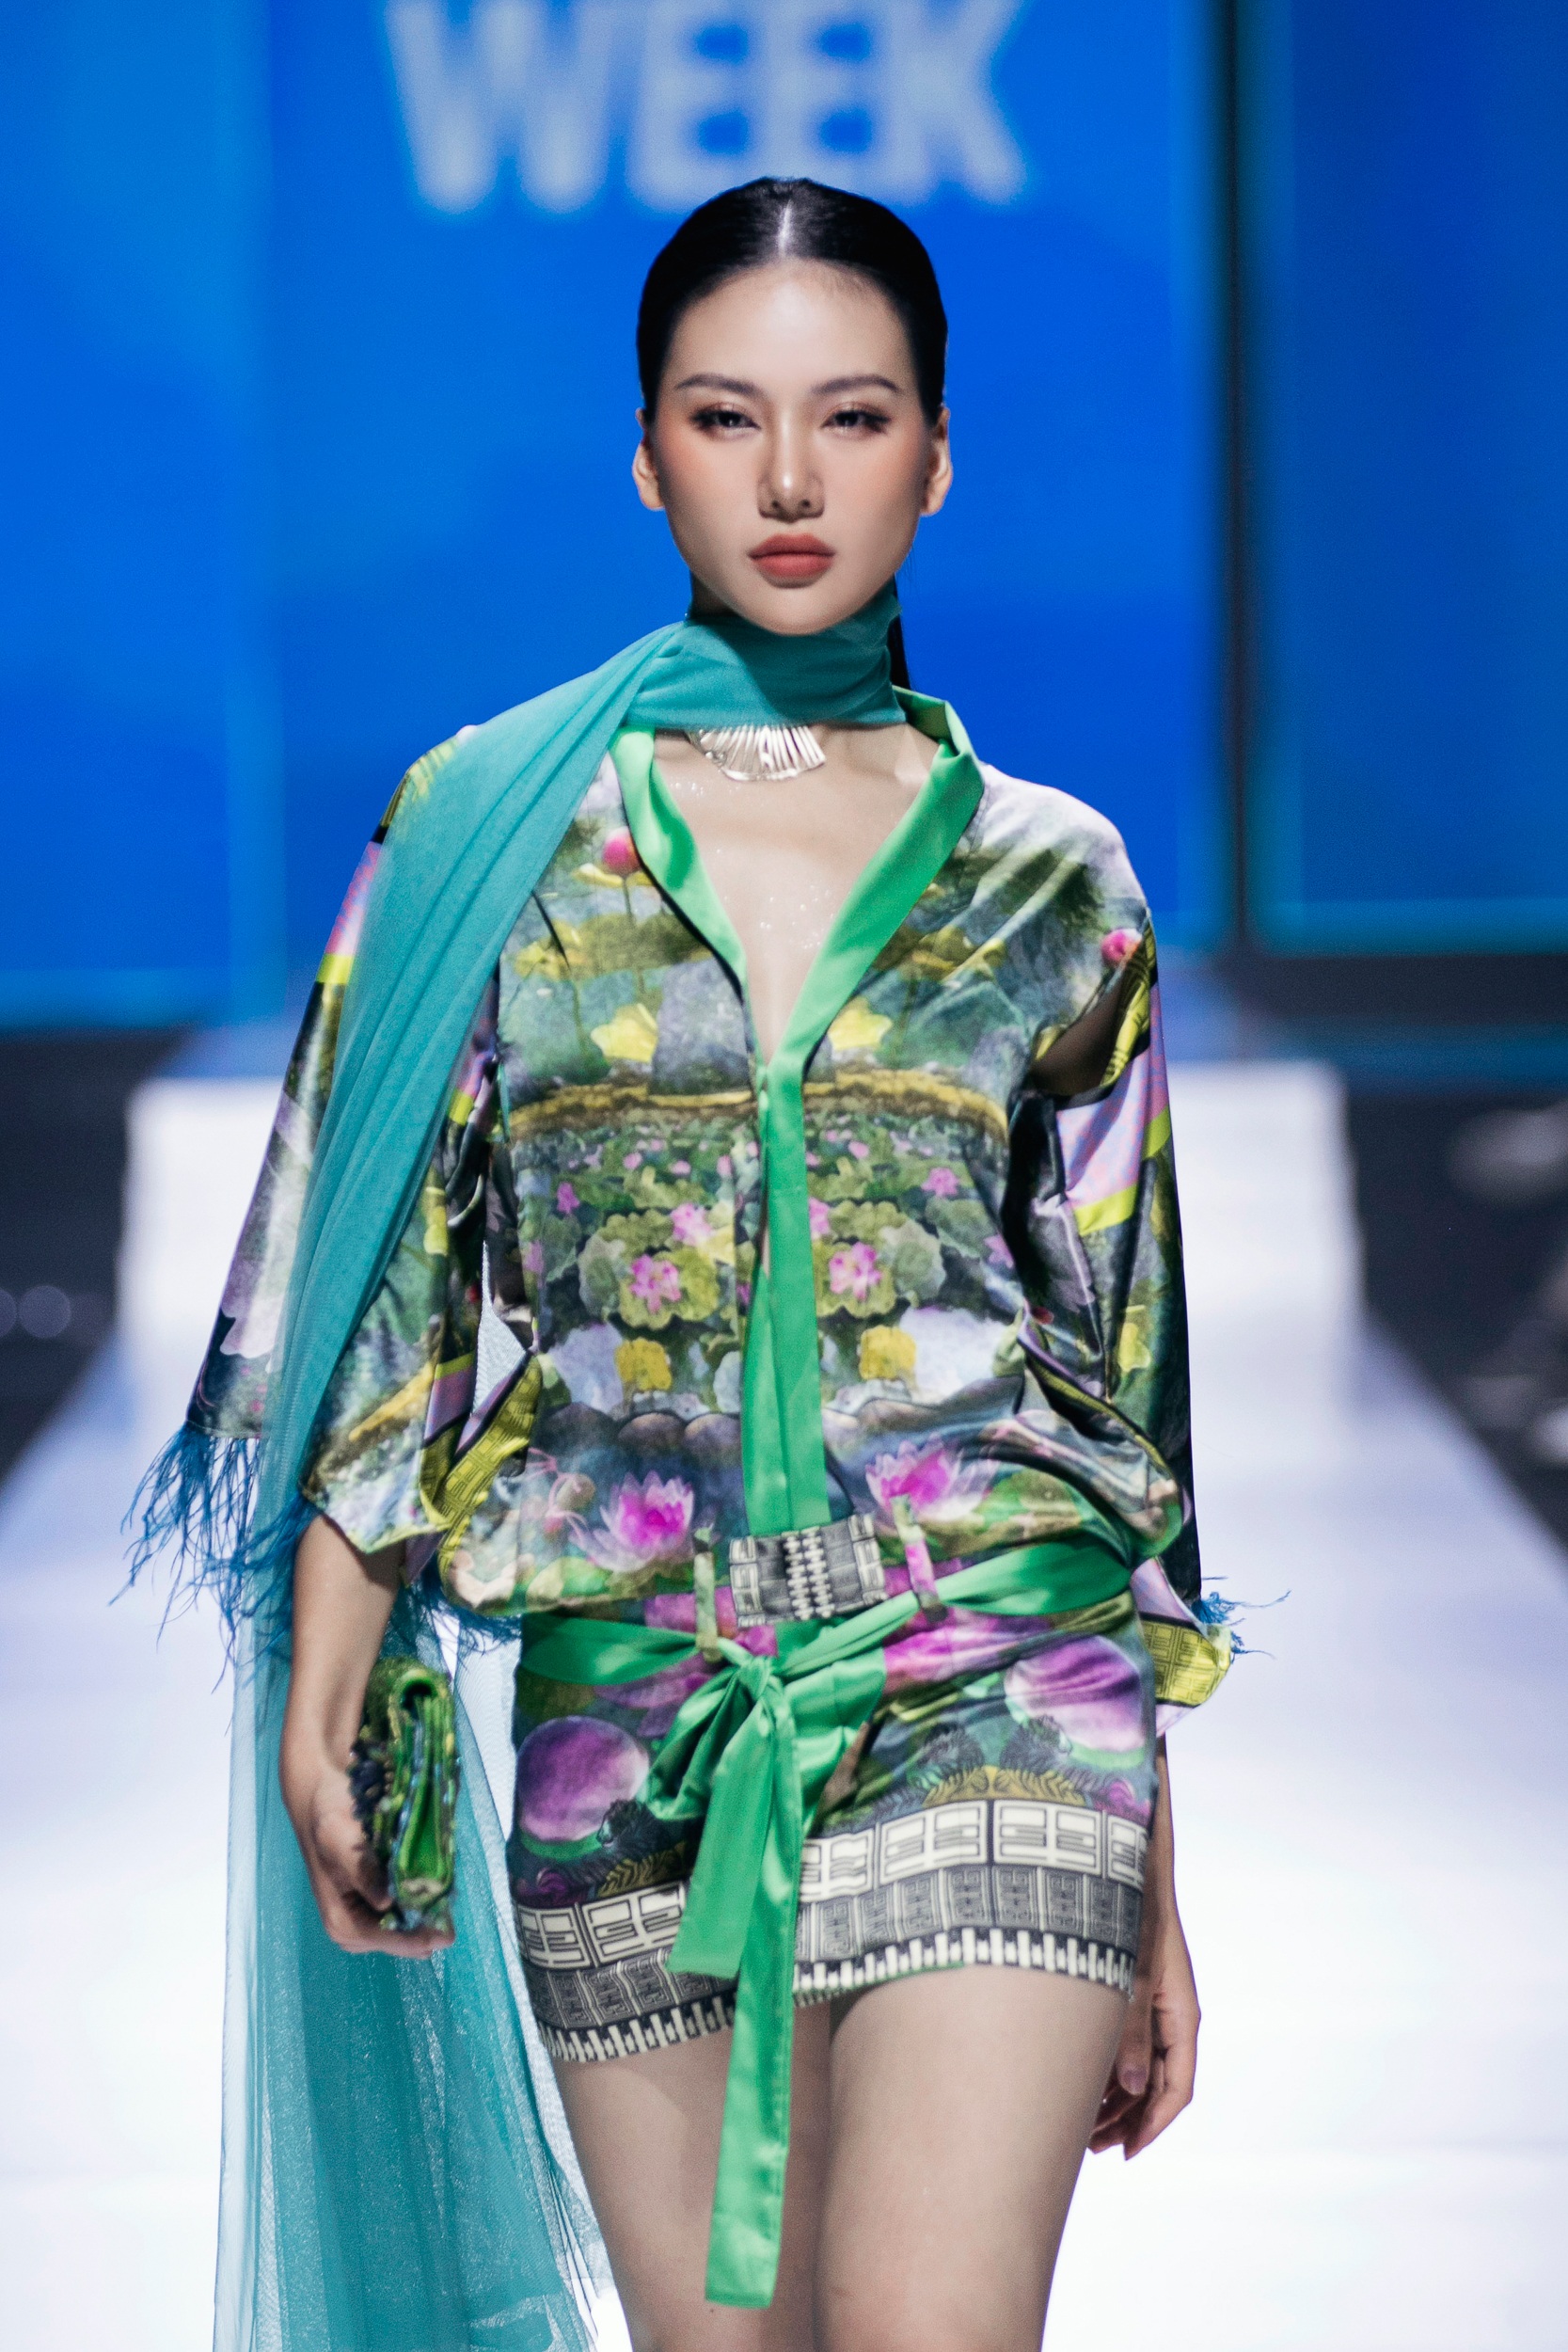 Hoa hậu Bùi Quỳnh Hoa mở màn BST "Dragon" của nhà mốt Maria Giovanna Costa (Italia) trong trang phục được lấy cảm hứng từ văn hóa Việt Nam. Cô tự tin sải bước dứt khoát, khoe dáng gợi cảm với chiếc váy lụa khoét eo khéo léo (Ảnh: Ban Tổ chức).